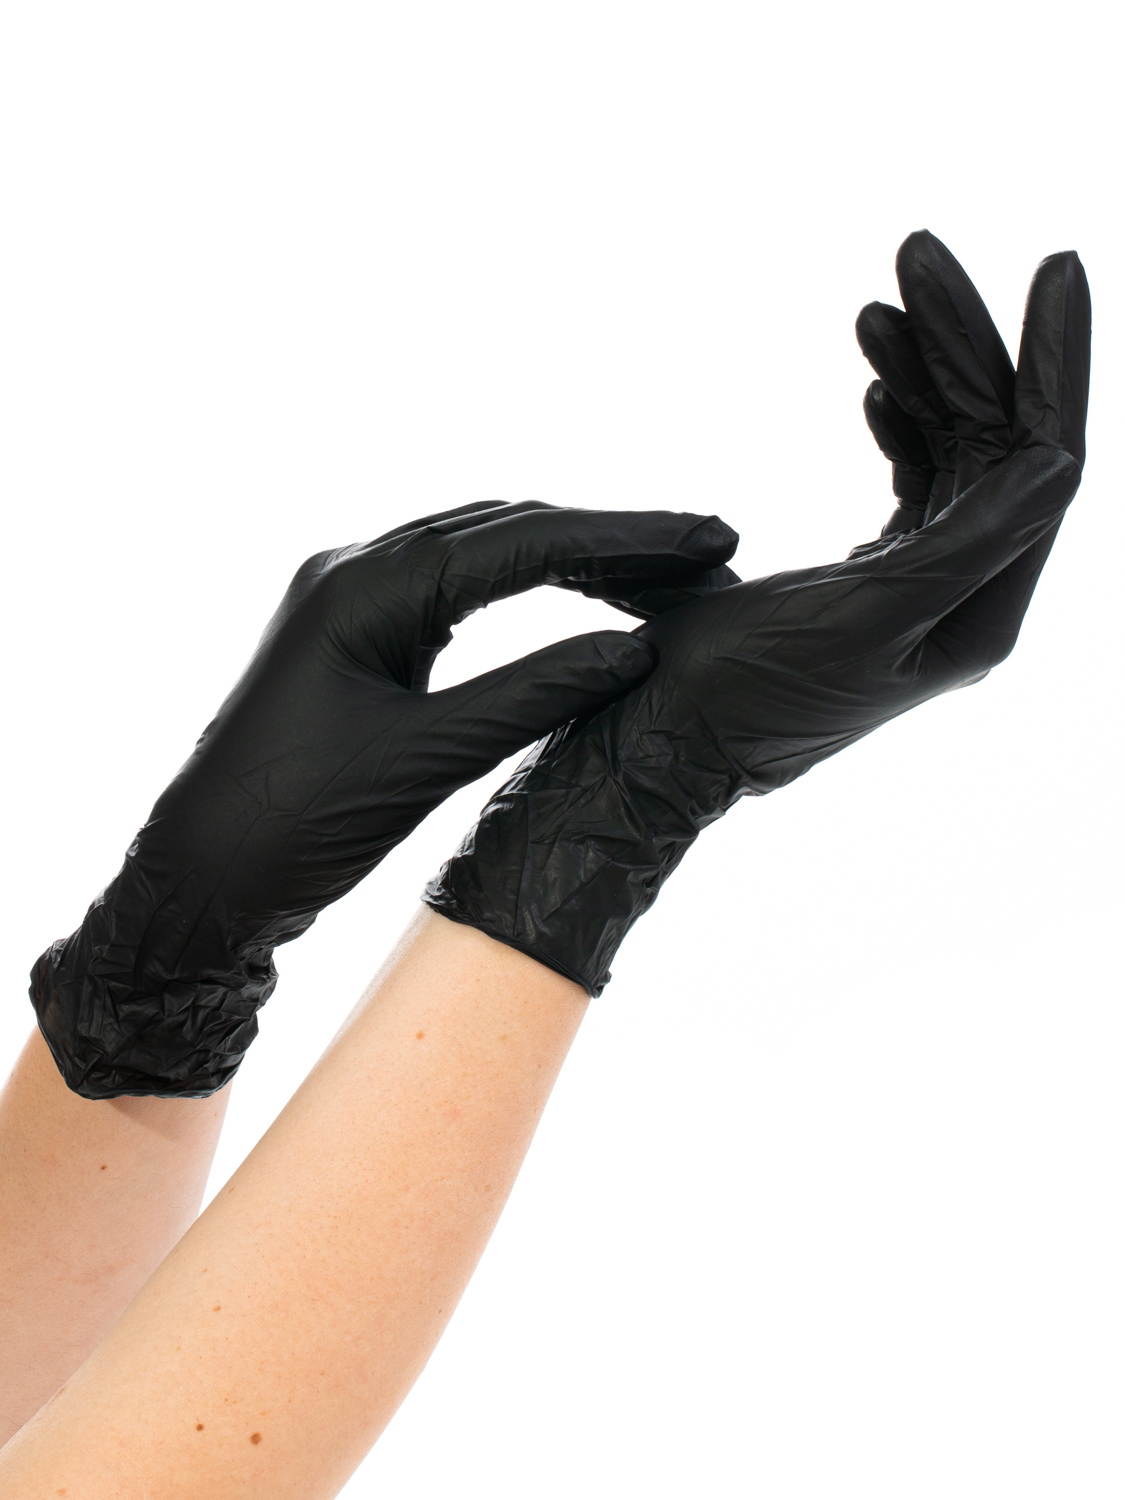 Перчатки одноразовые нитриловые NitriMAX черные размер XL, 100 штук  - купить со скидкой